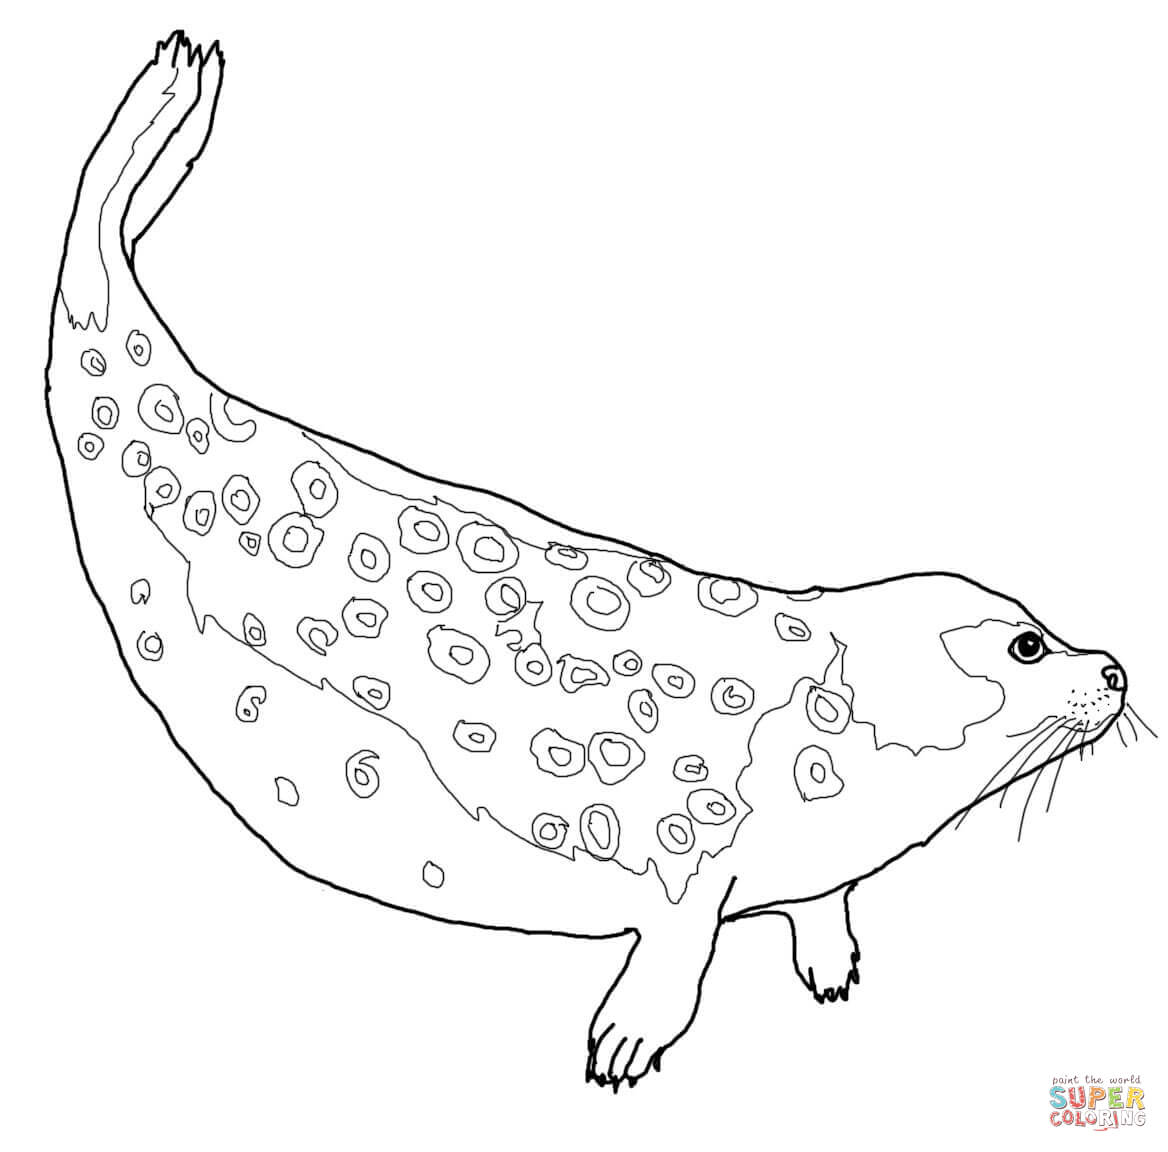 Harp Seal coloring #13, Download drawings